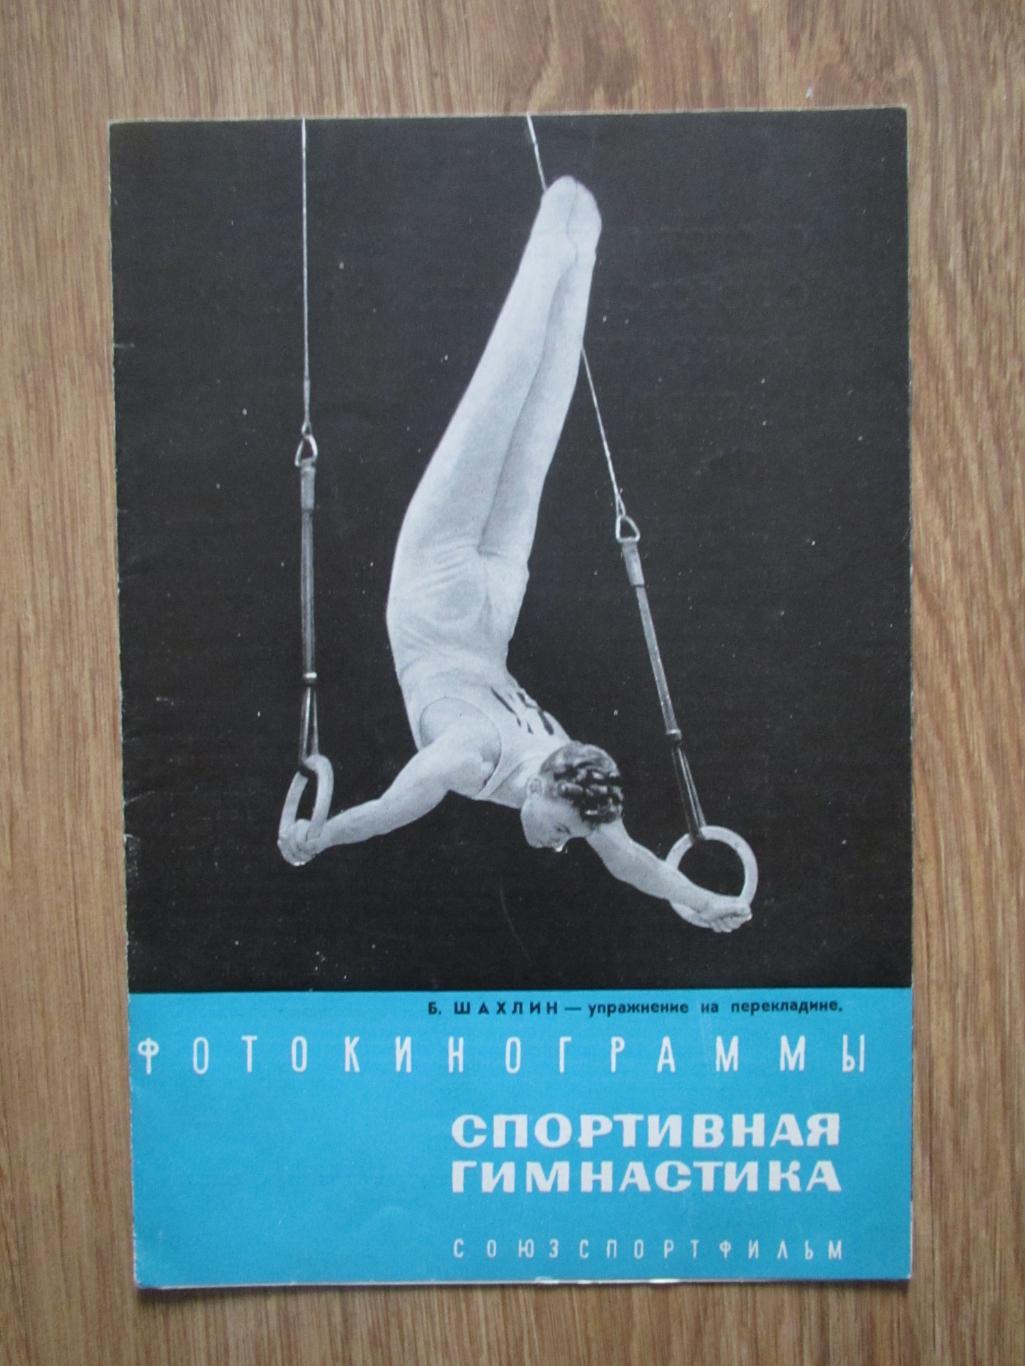 Буклет Фотокинограммы : Спортивная гимнастика